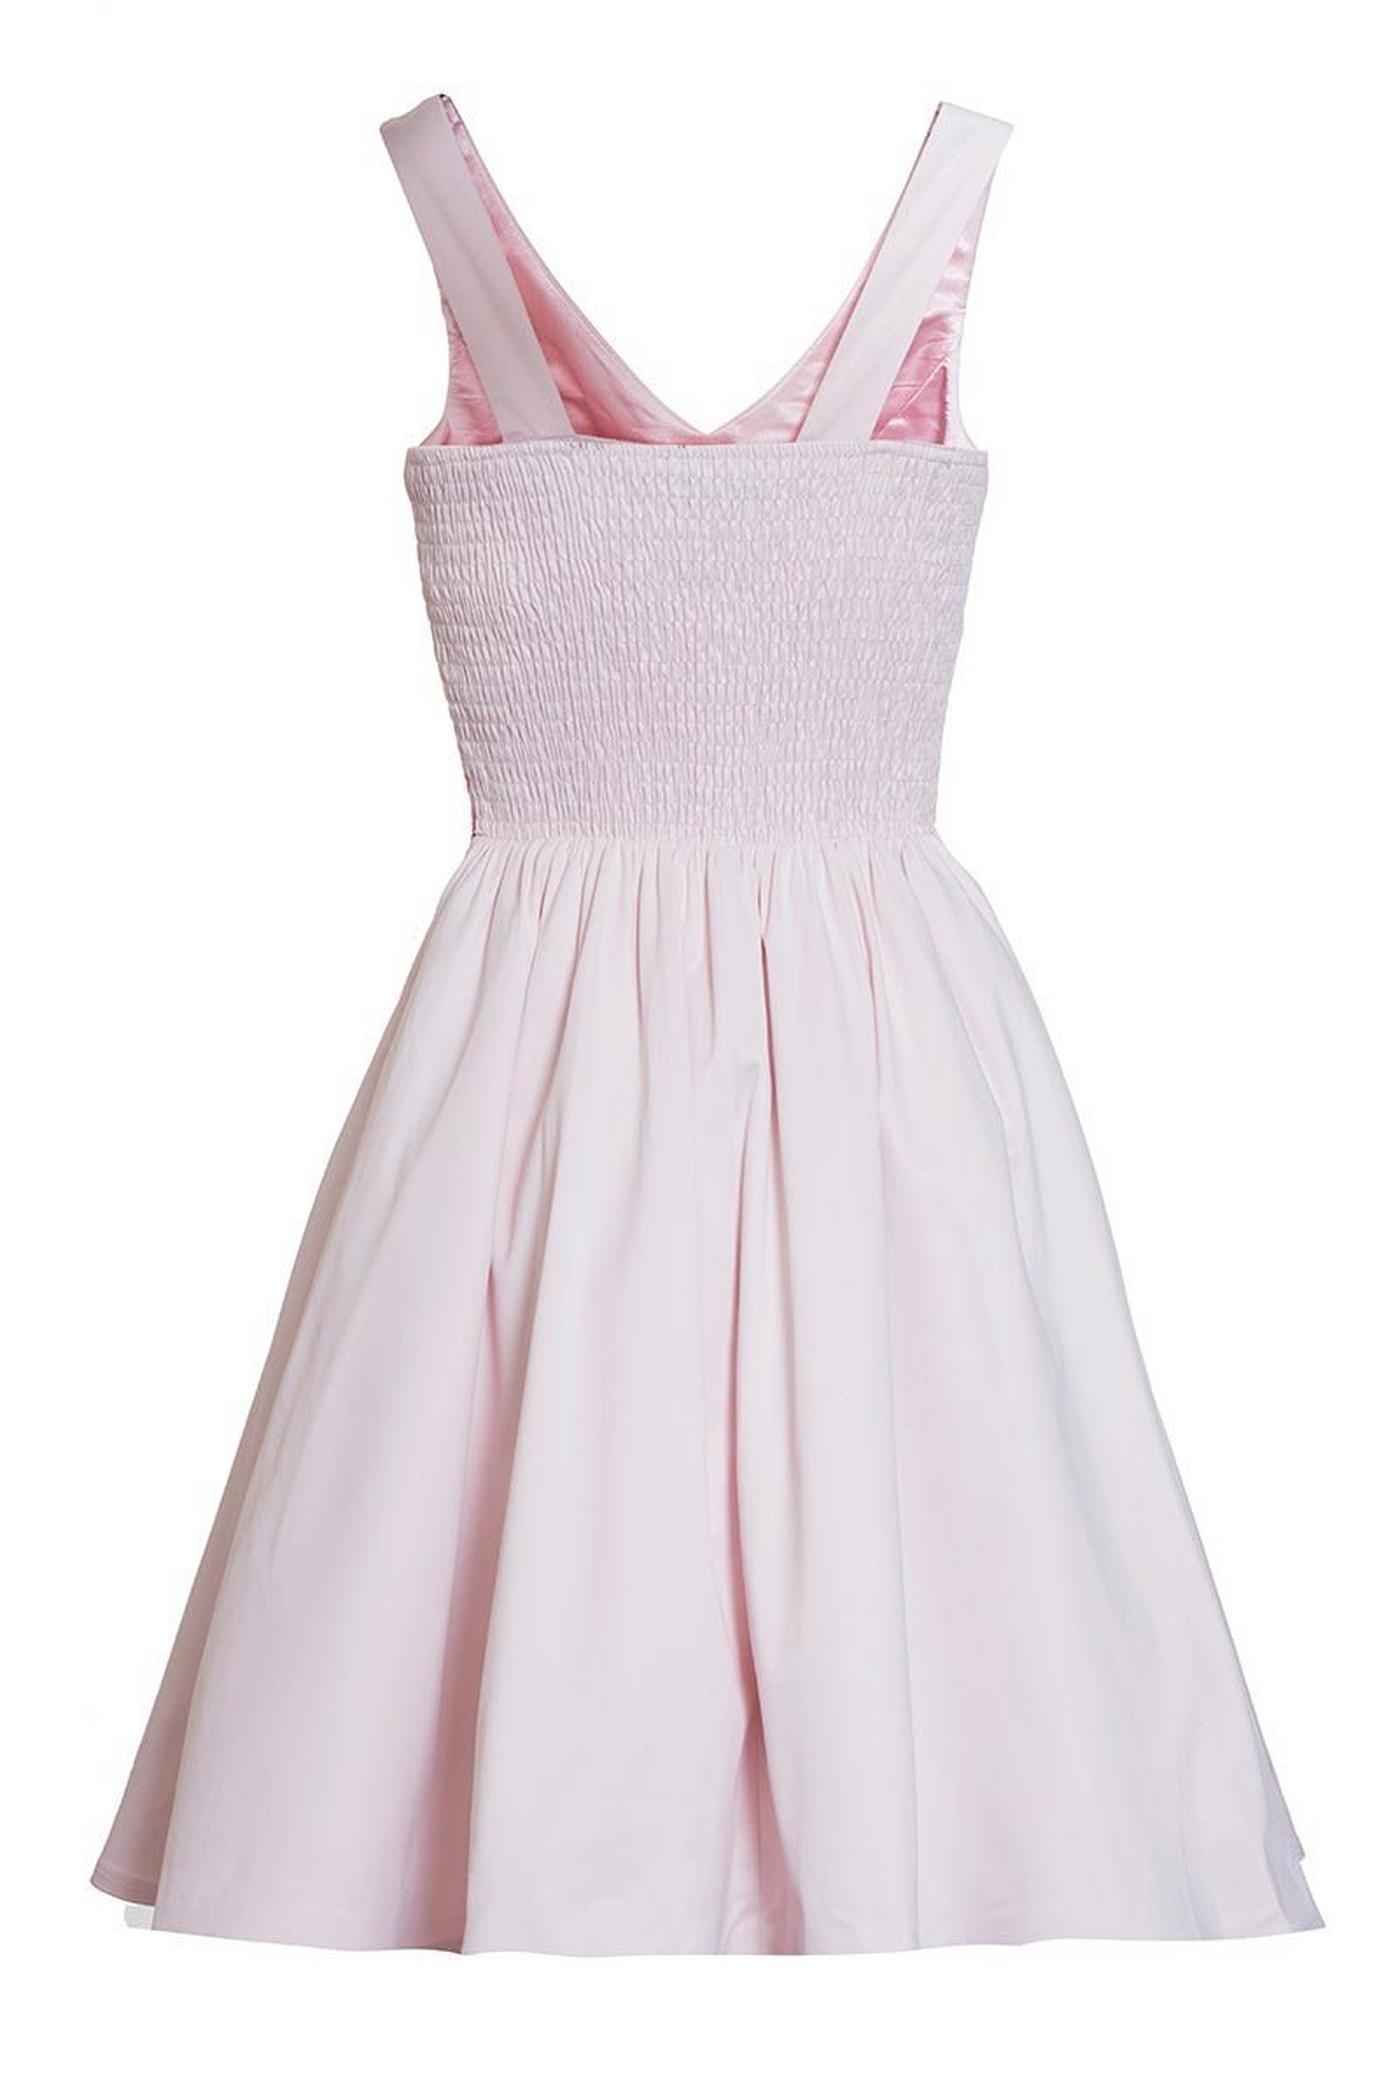 Pale Pink Satin Floral Print Skater Dress